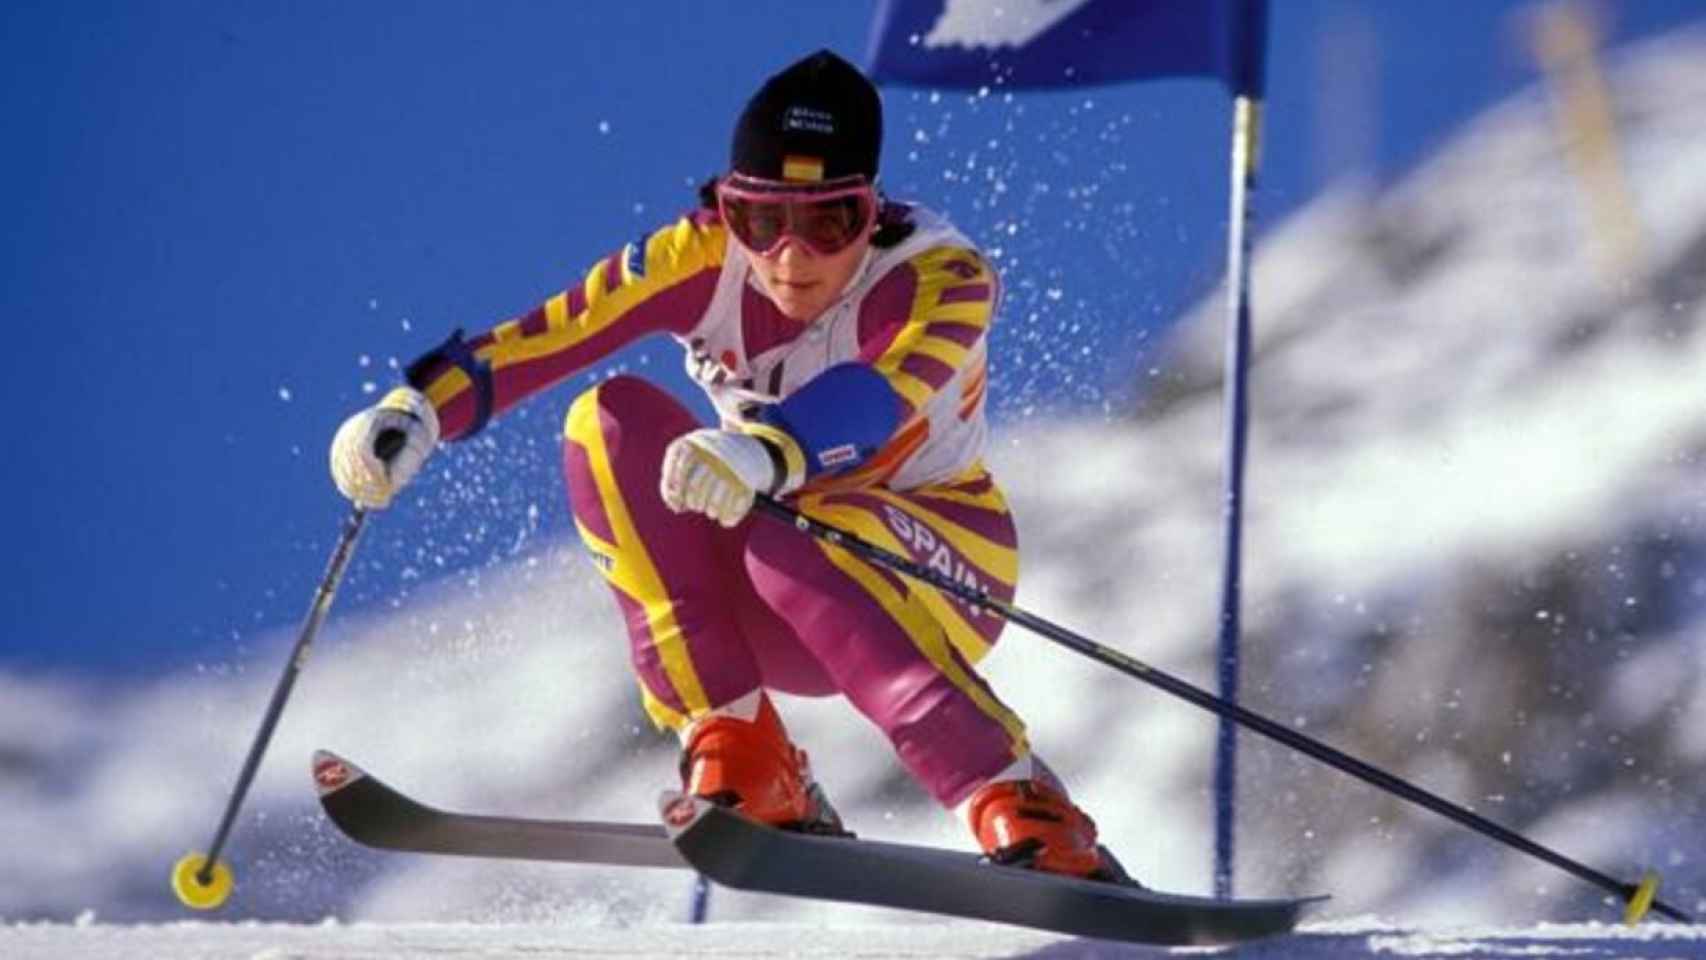 Blanca Fernández Ochoa compitiendo en esqui.